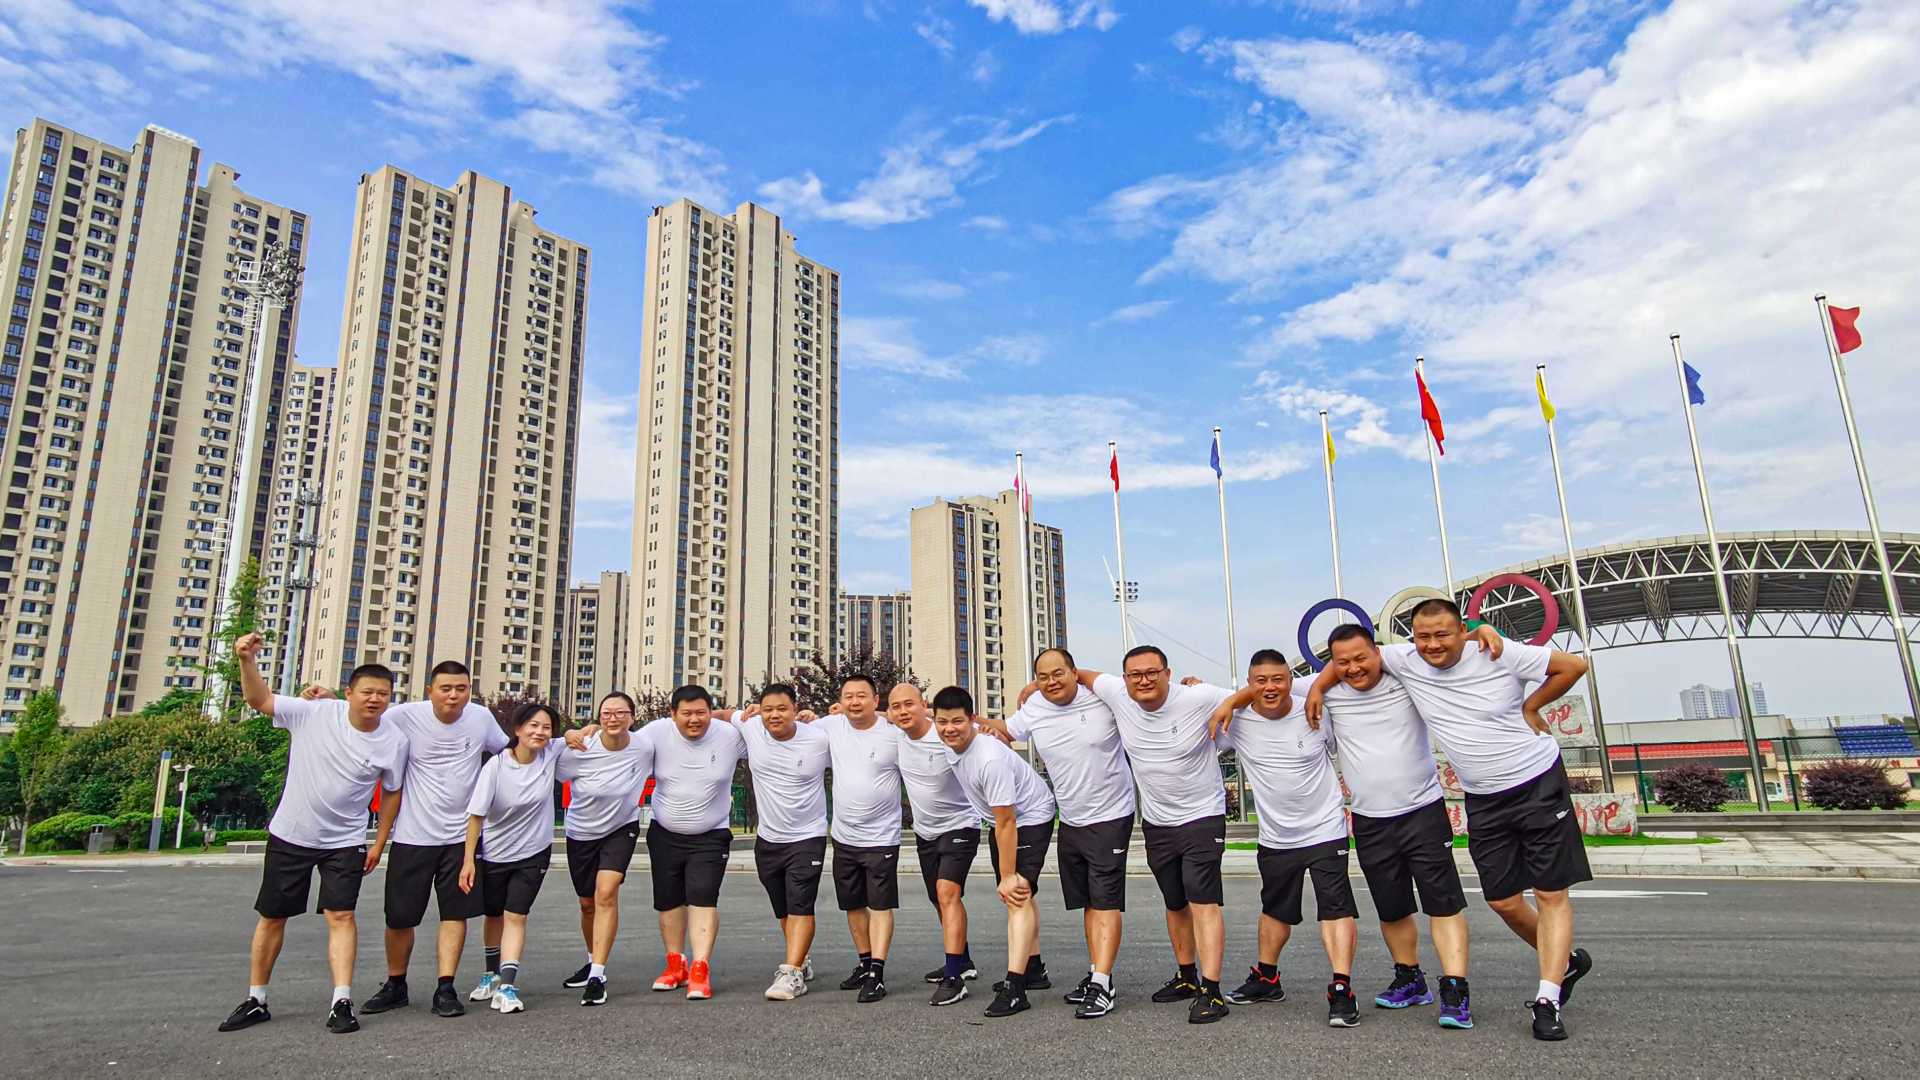 石门县城管执法局参加全民健身运动会“红医杯”拔河比赛掠影